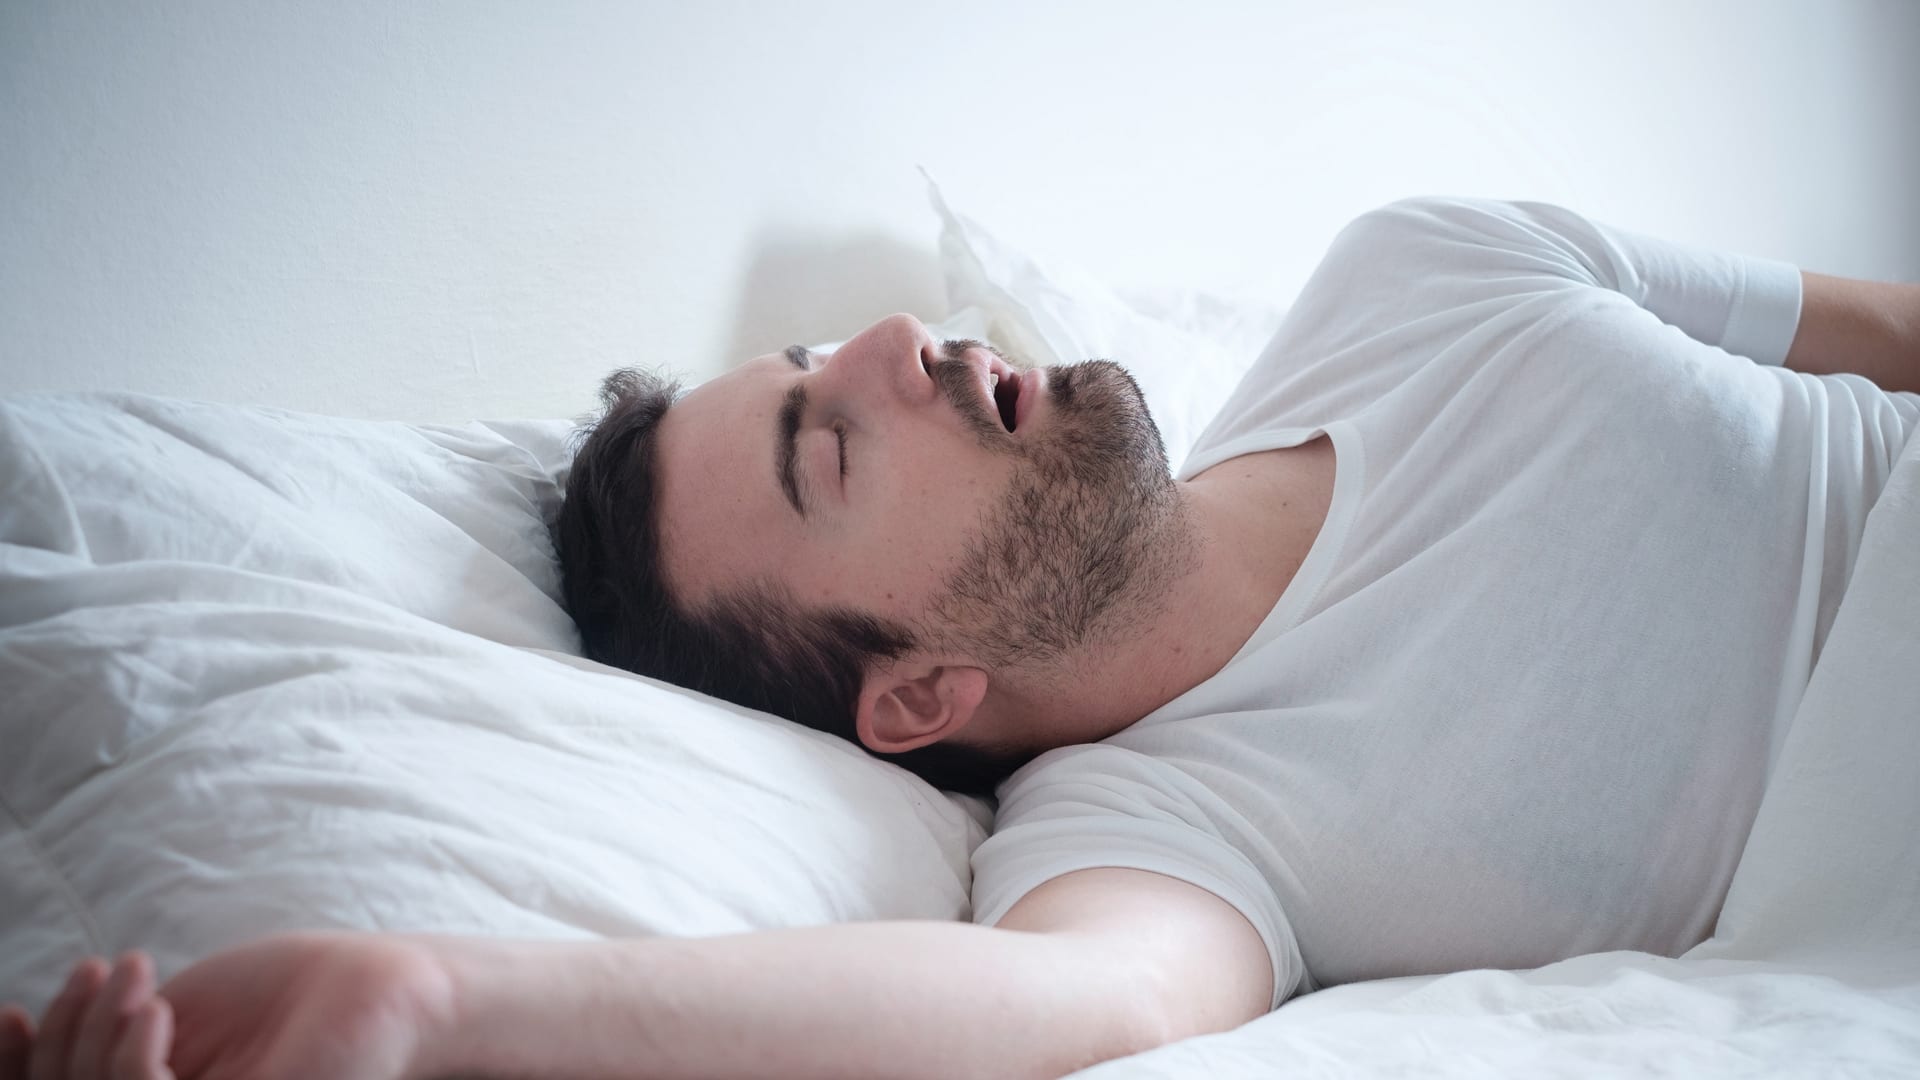 Foto de capa do artigo "Recuperar o sono no fim de semana não é bom para a saúde"